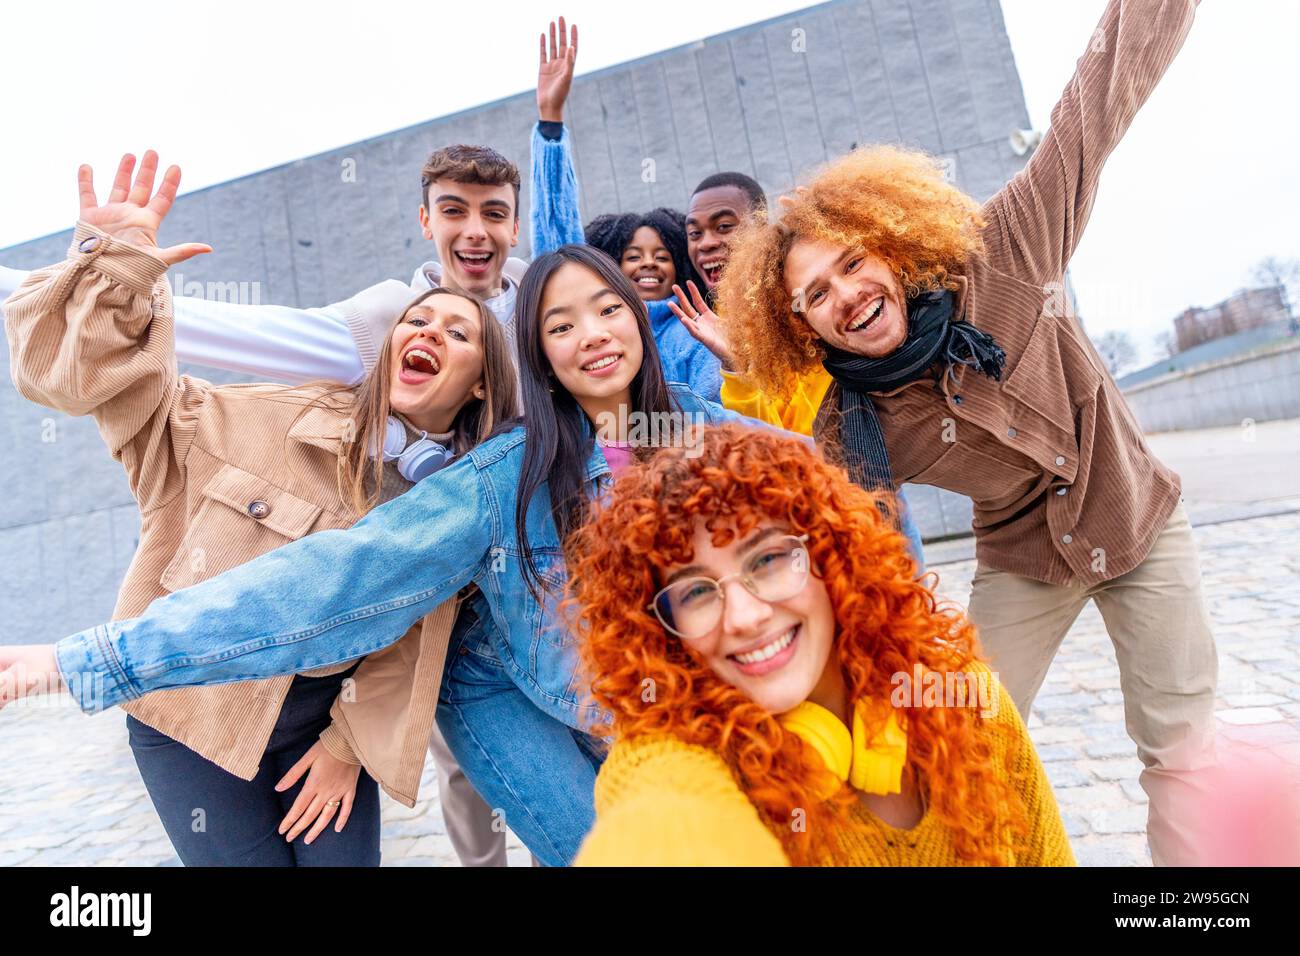 Lustiges Selfie einer multiethnischen Gruppe von Menschen in einem urbanen Raum Stockfoto